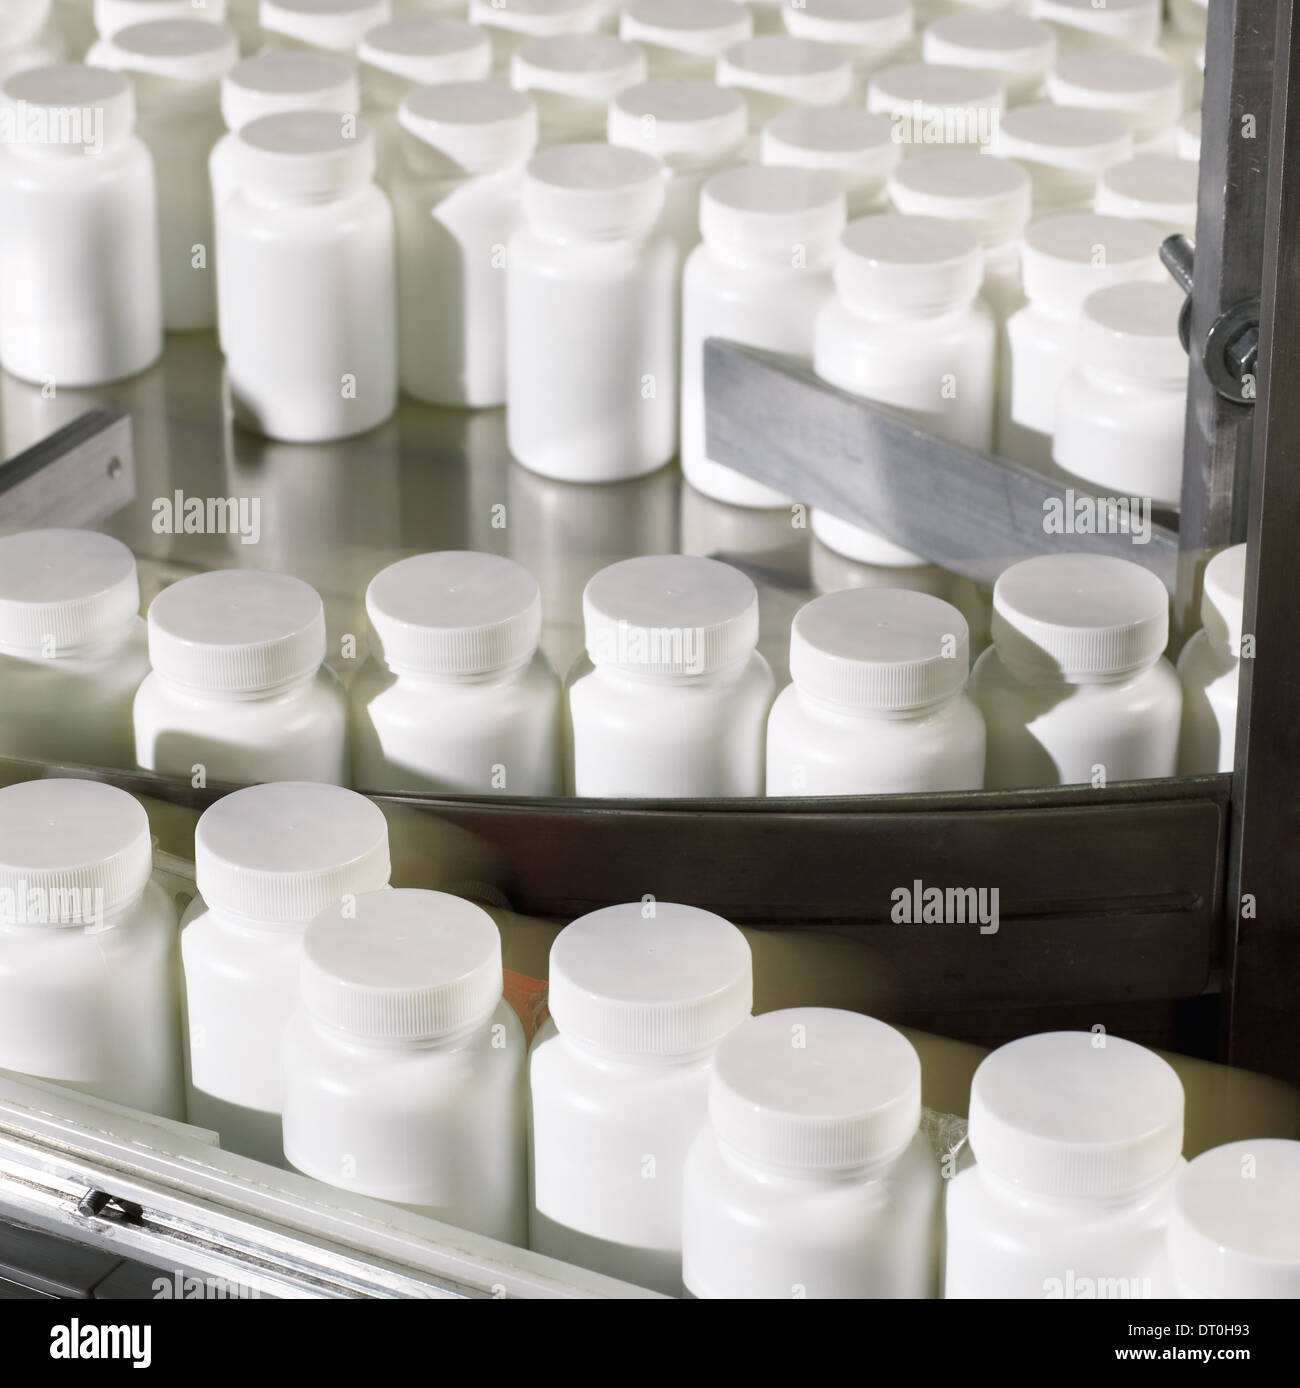 Préparation de bouteilles être étiquetés dans une installation de traitement pharmaceutique. Banque D'Images